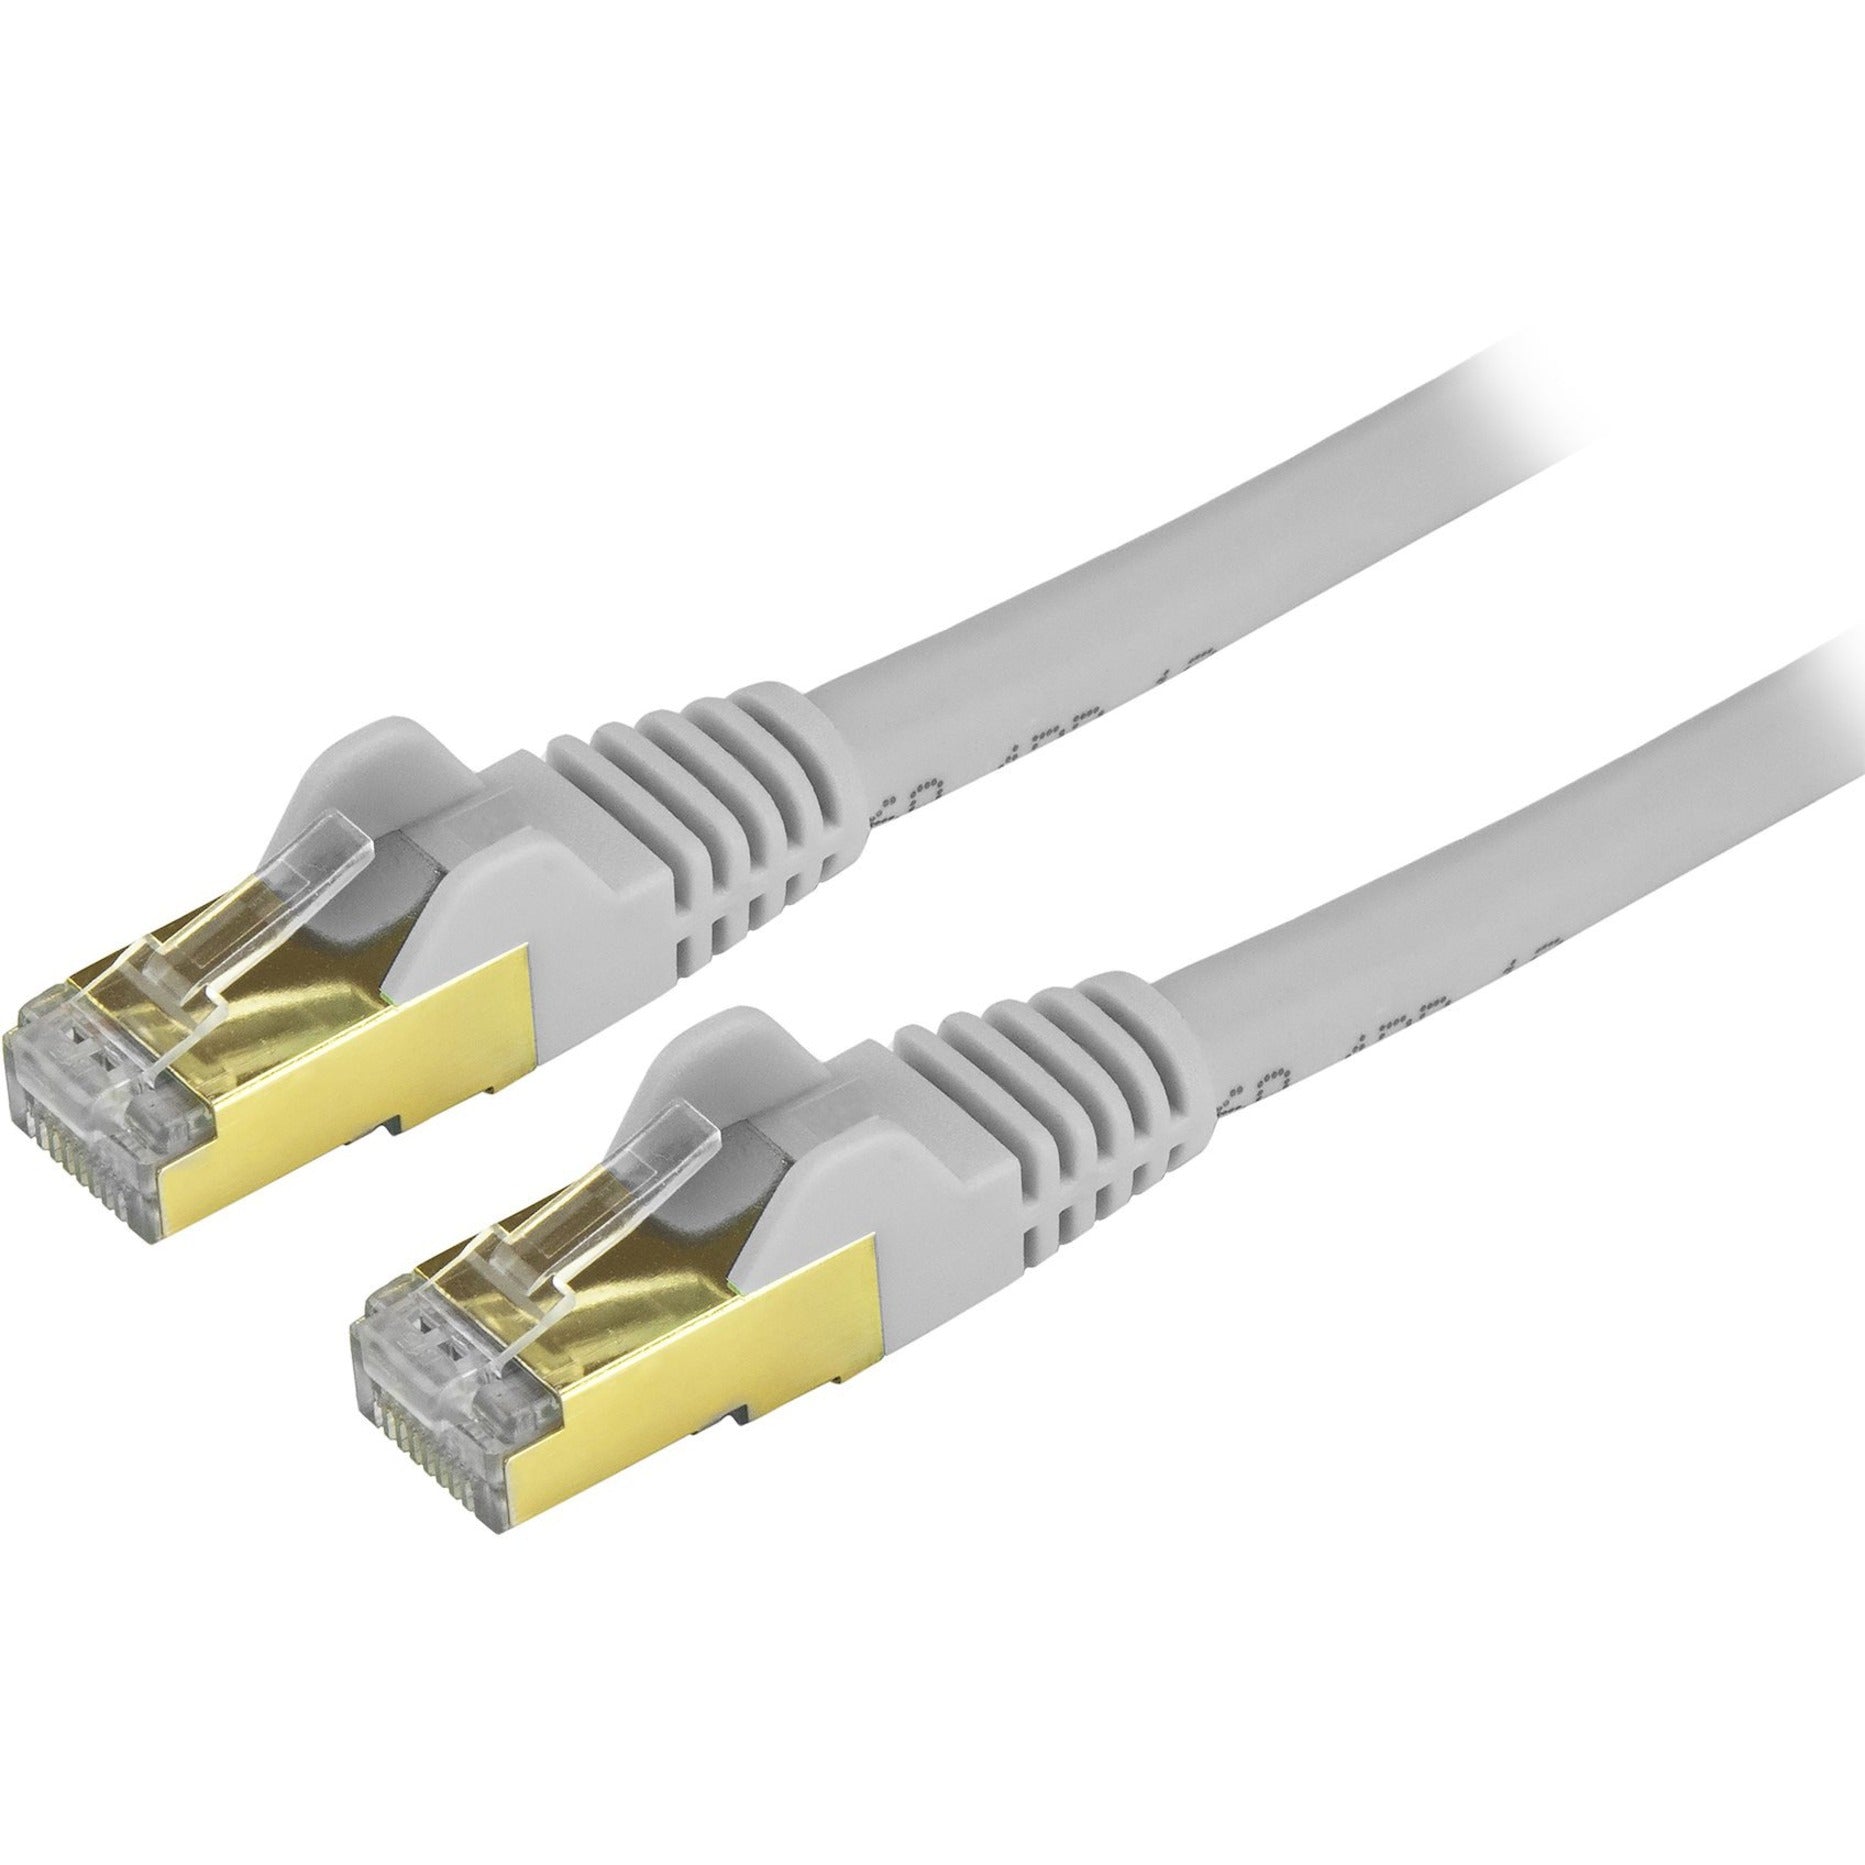 StarTech.com C6ASPAT15GR Cat6a Ethernet Patch Cable - Shielded (STP) - 15 ft., Gray, Long Ethernet Cord